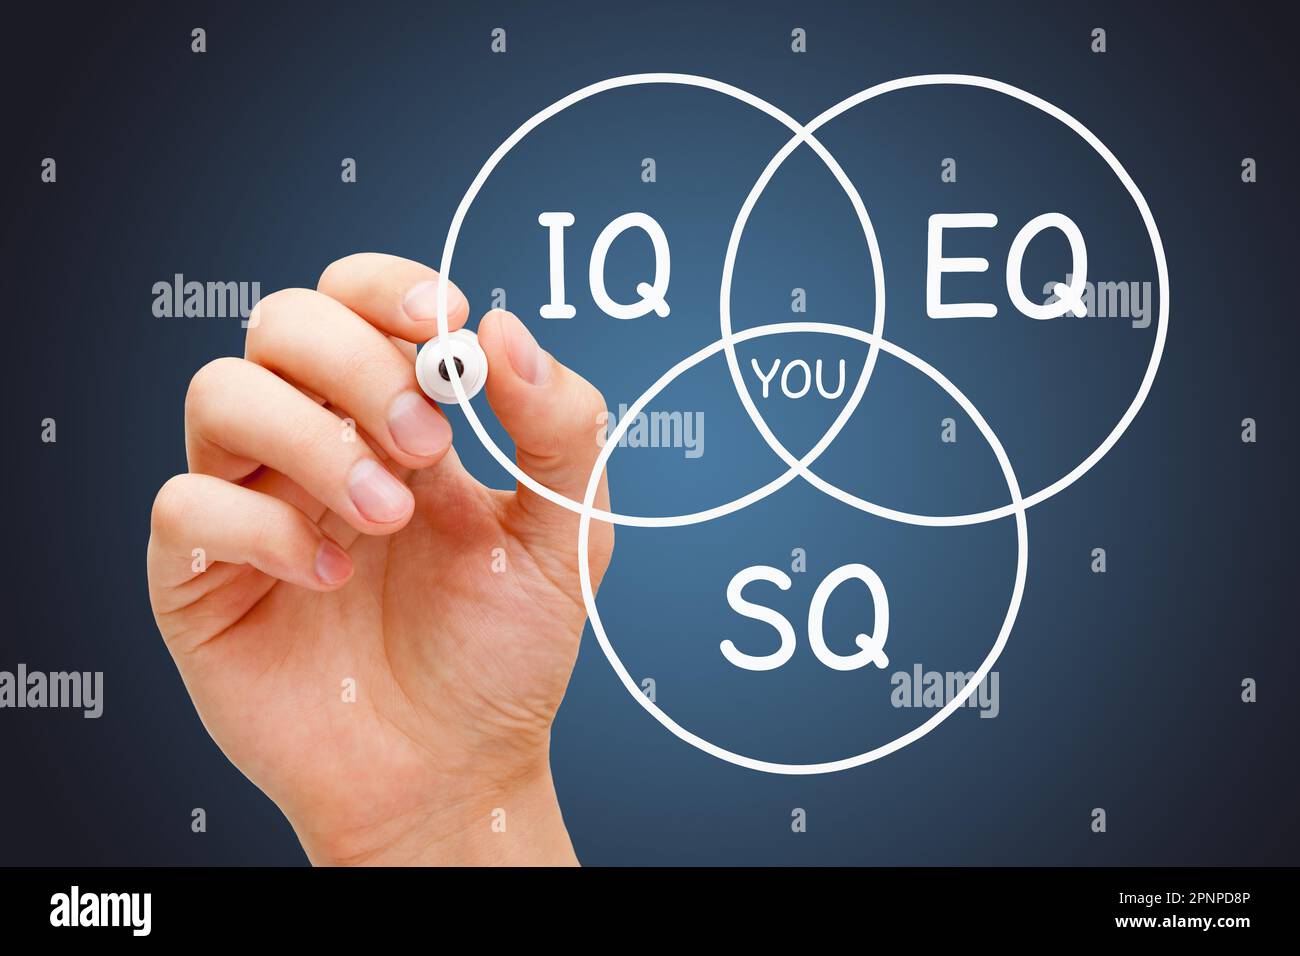 Handgezeichnetes Diagrammkonzept über IQ-Intelligenzquotient, EQ-emotionale Intelligenz und SQ-spiritueller oder sozialer Quotient. Stockfoto